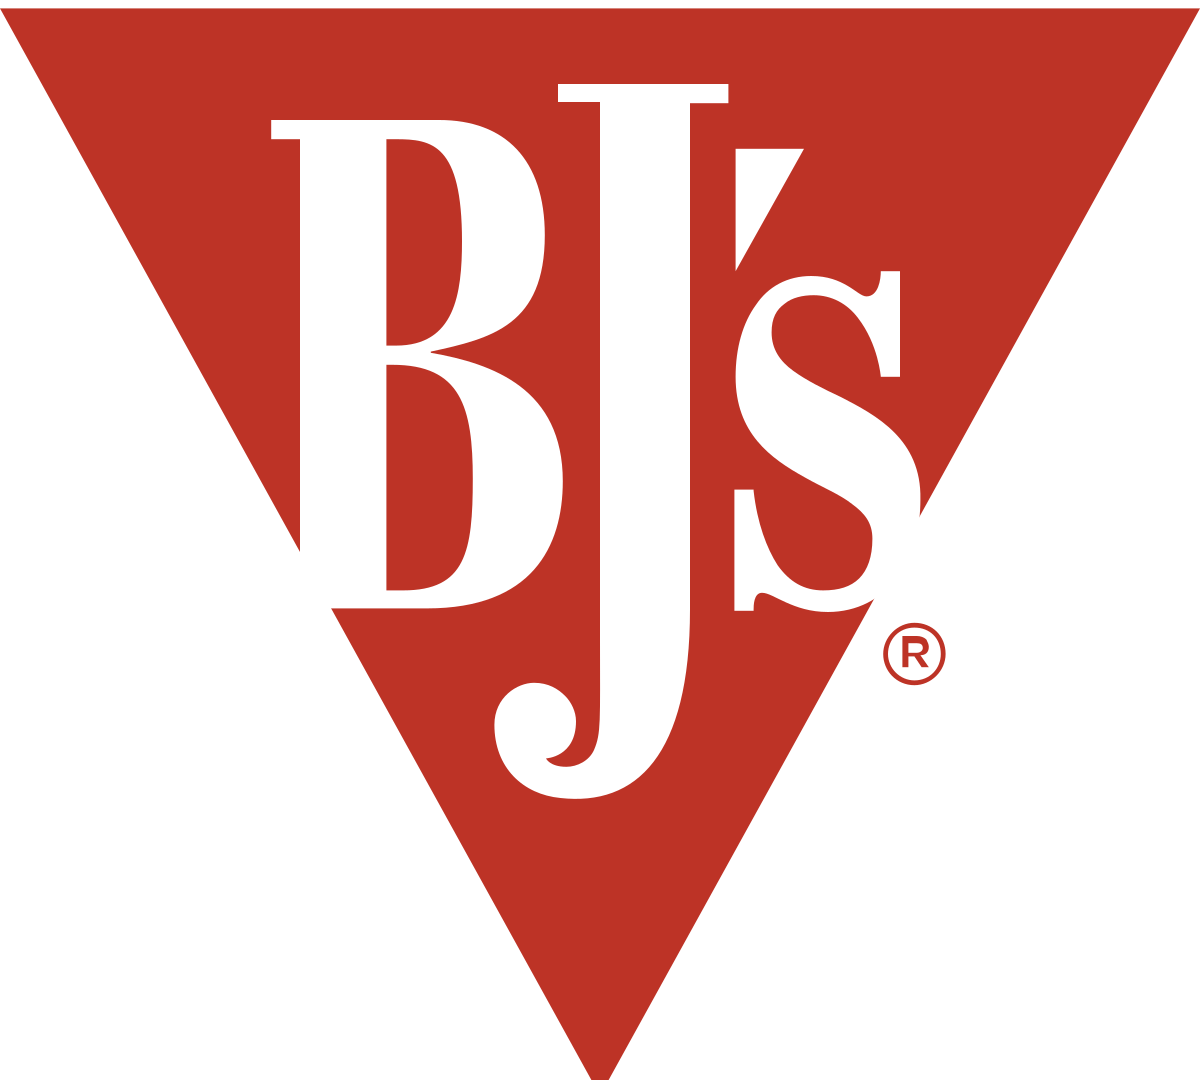 BJ's Restaurants